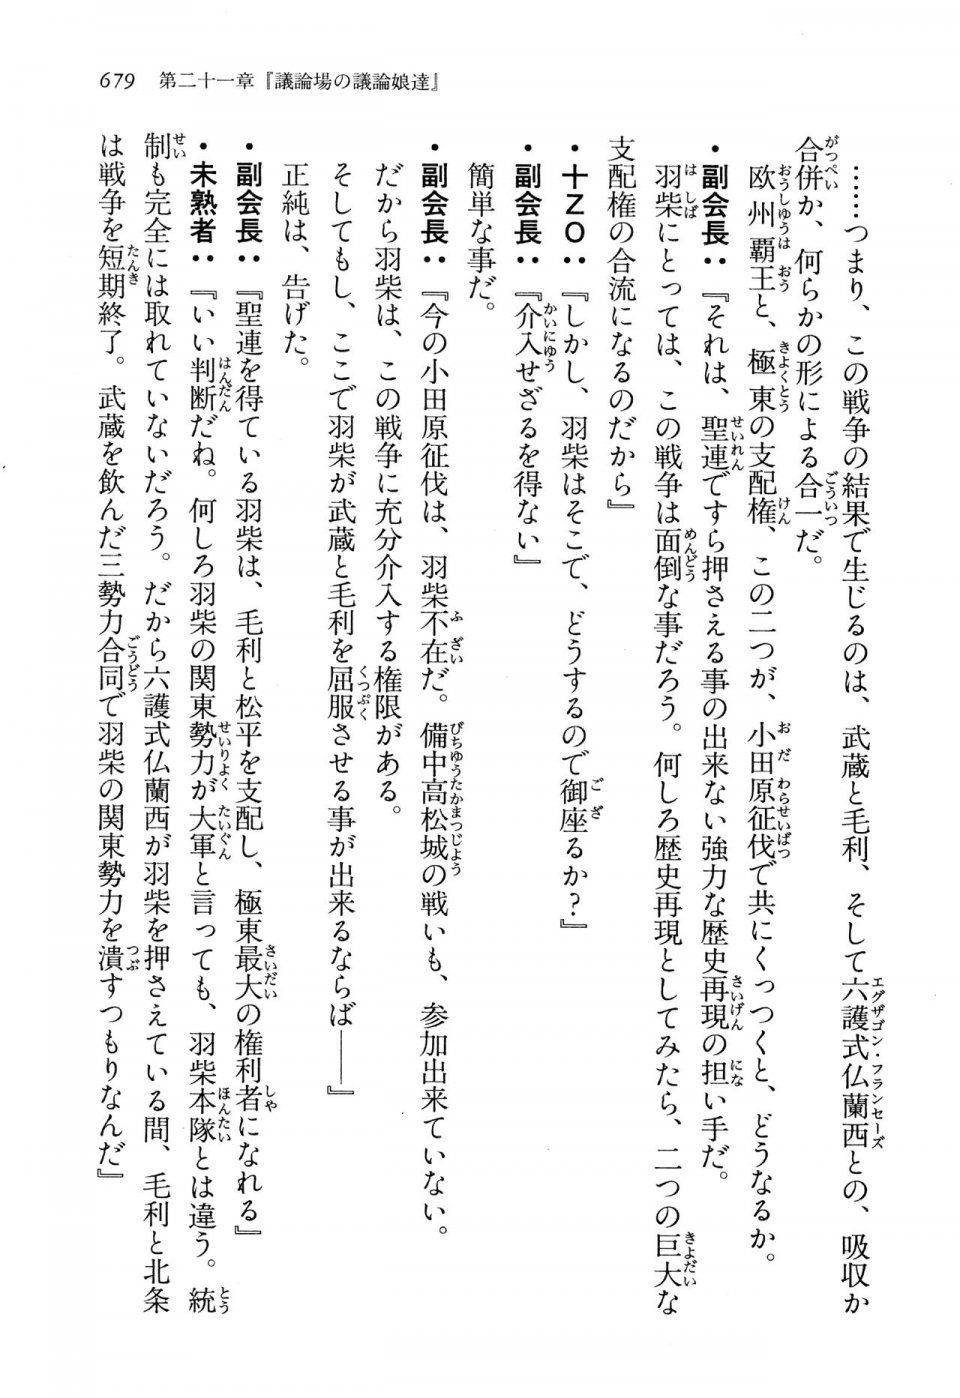 Kyoukai Senjou no Horizon LN Vol 13(6A) - Photo #679